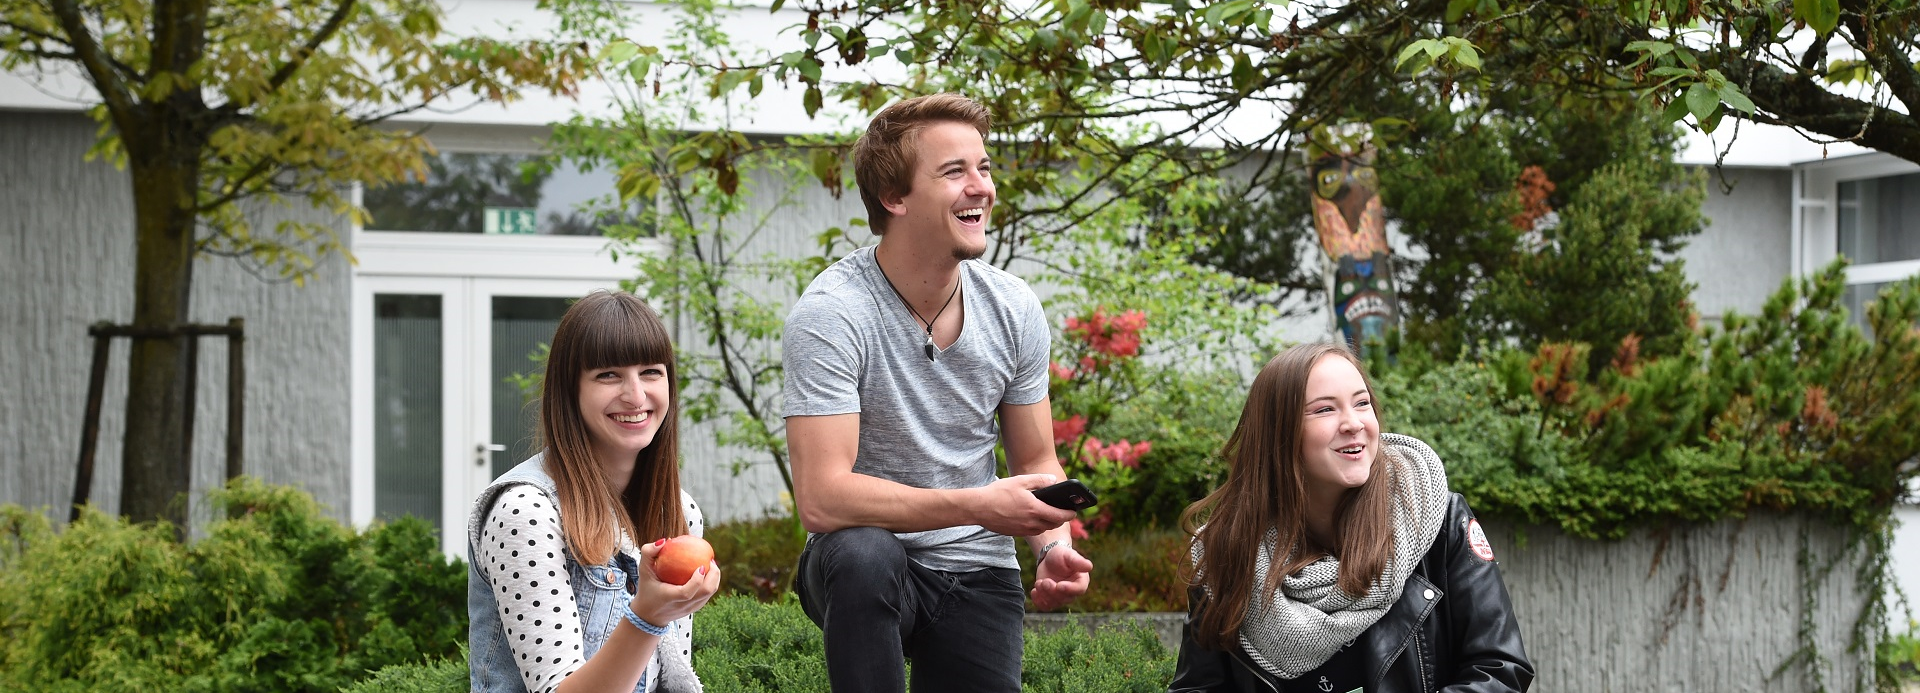 Foto von drei fröhlich lachenden jungen Personen vor einem Gebäude uns Pflanzen im Hintergrund. Eine Person lacht direkt in die Kamera.